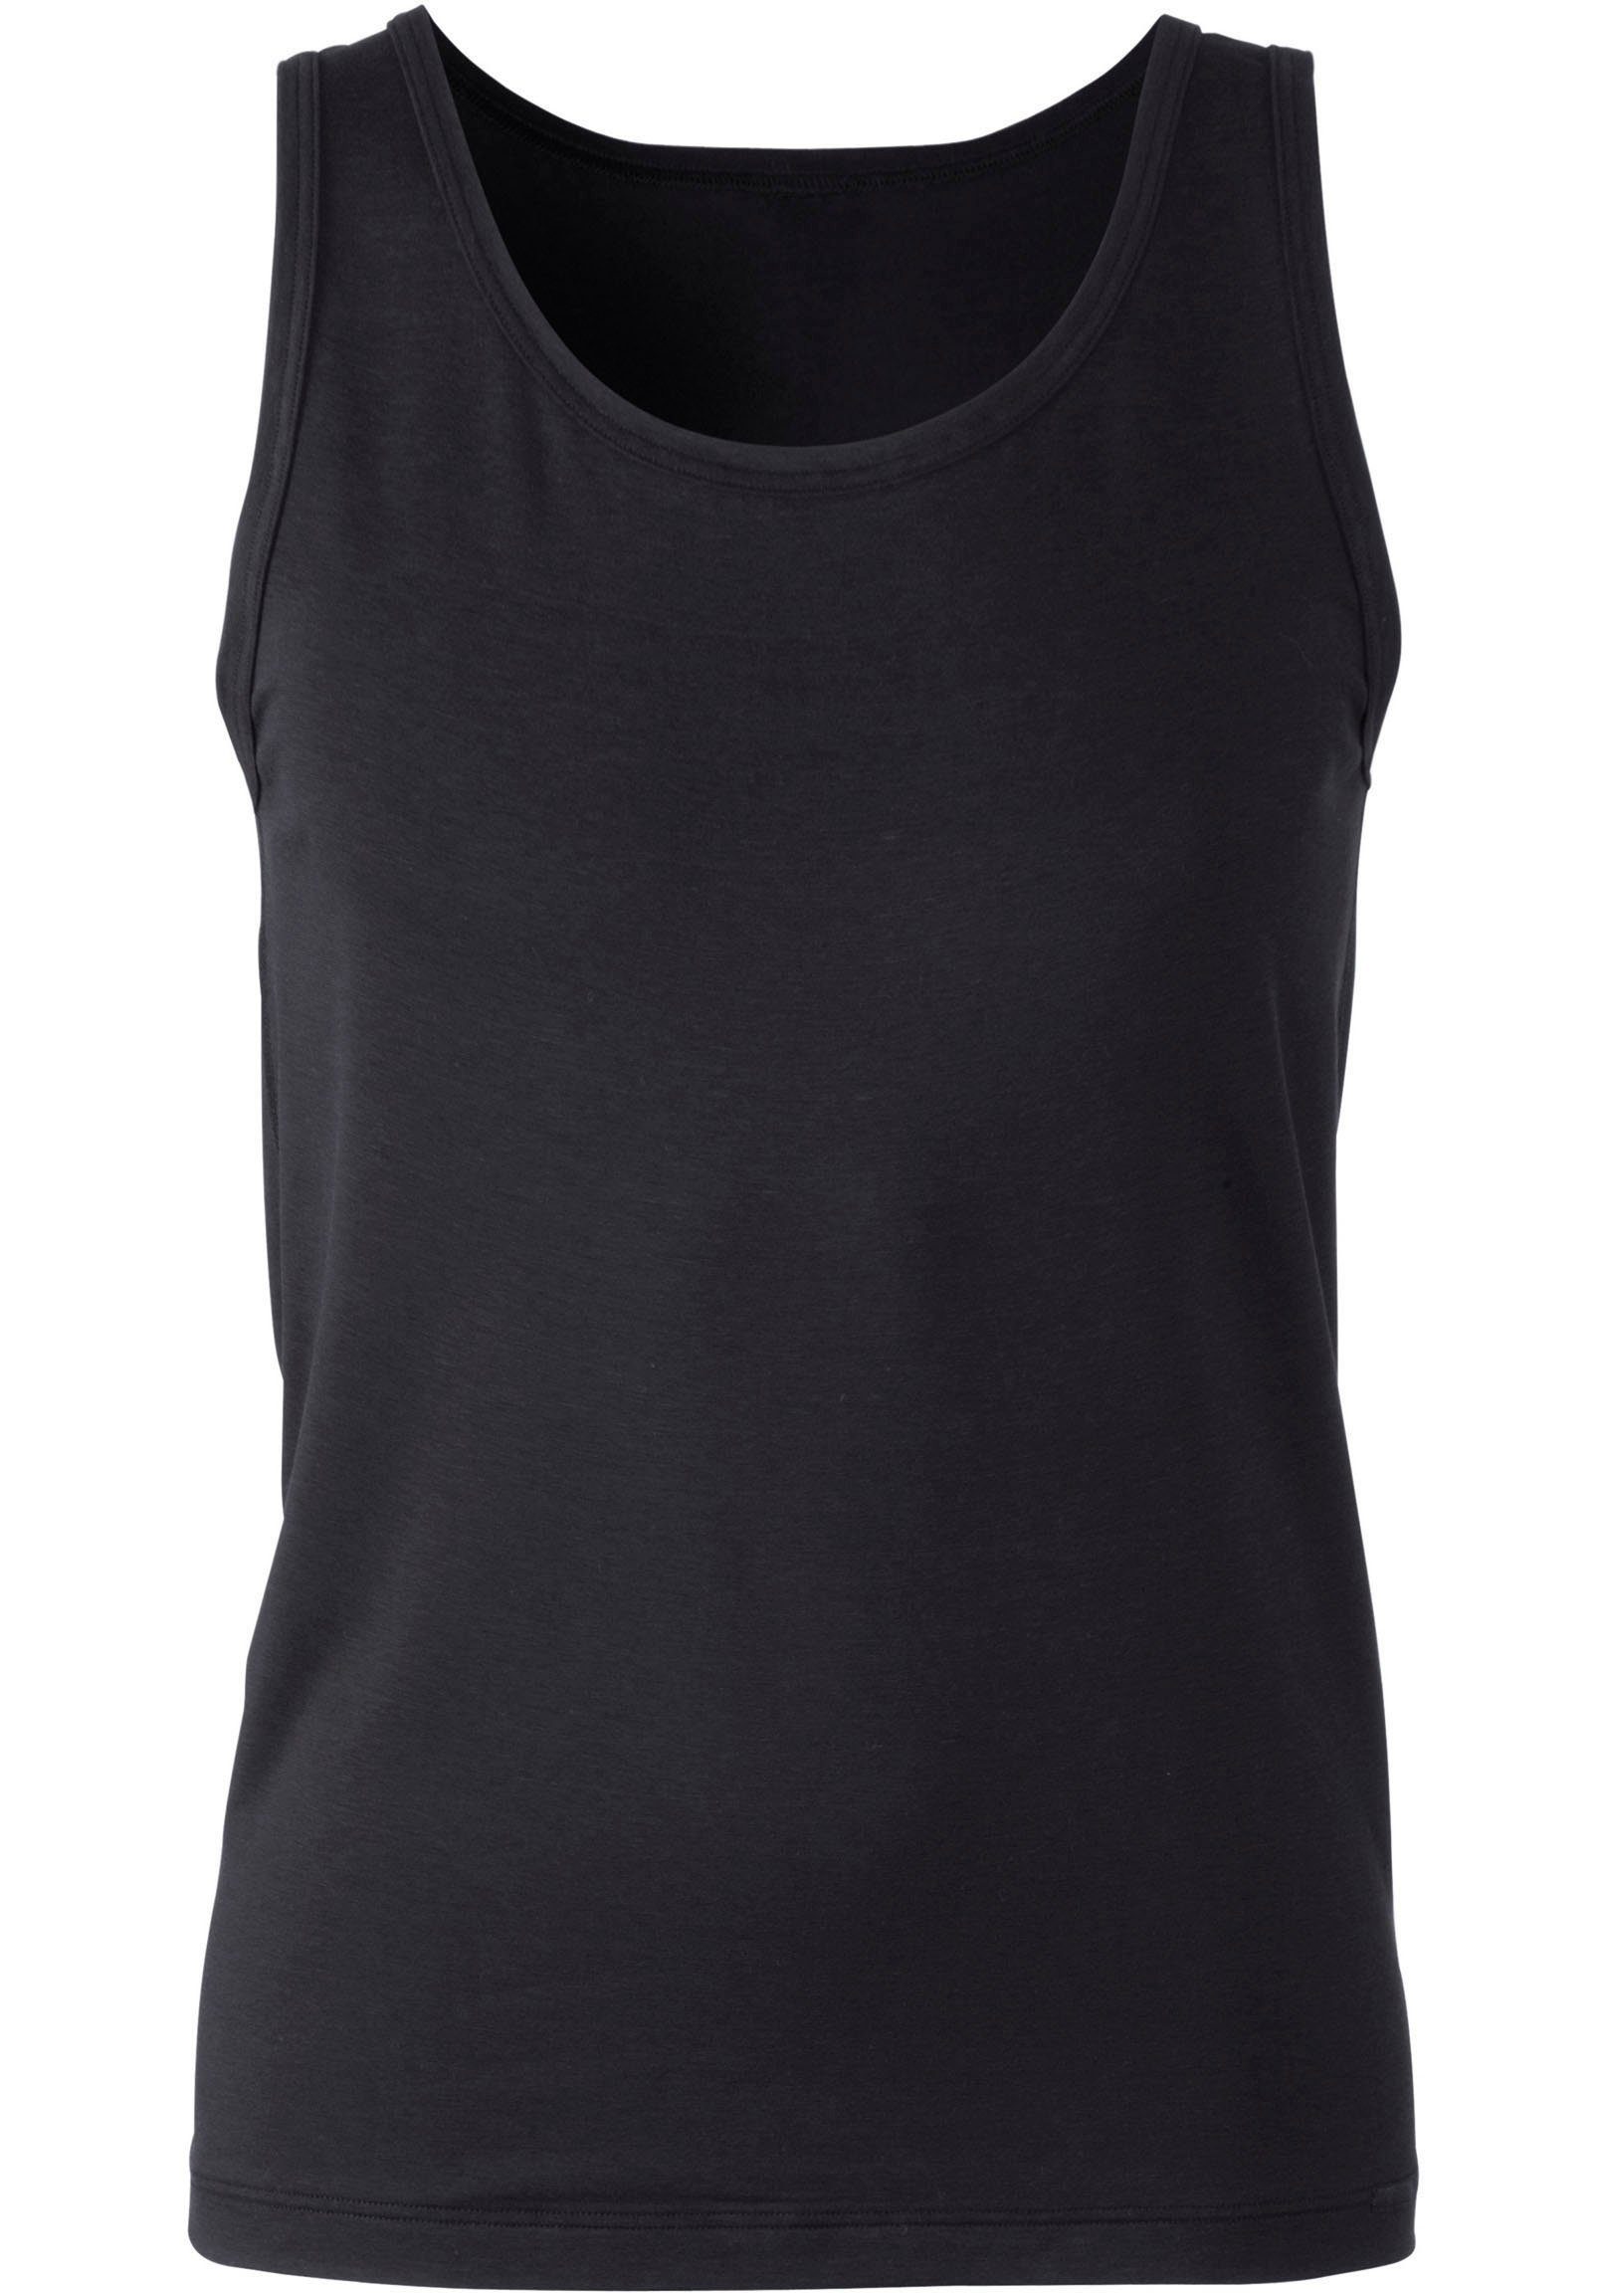 Focus CALIDA schwarz Schnitt mit gerader Unterhemd eingefasstem Rundhalsausschnitt, Achselhemd